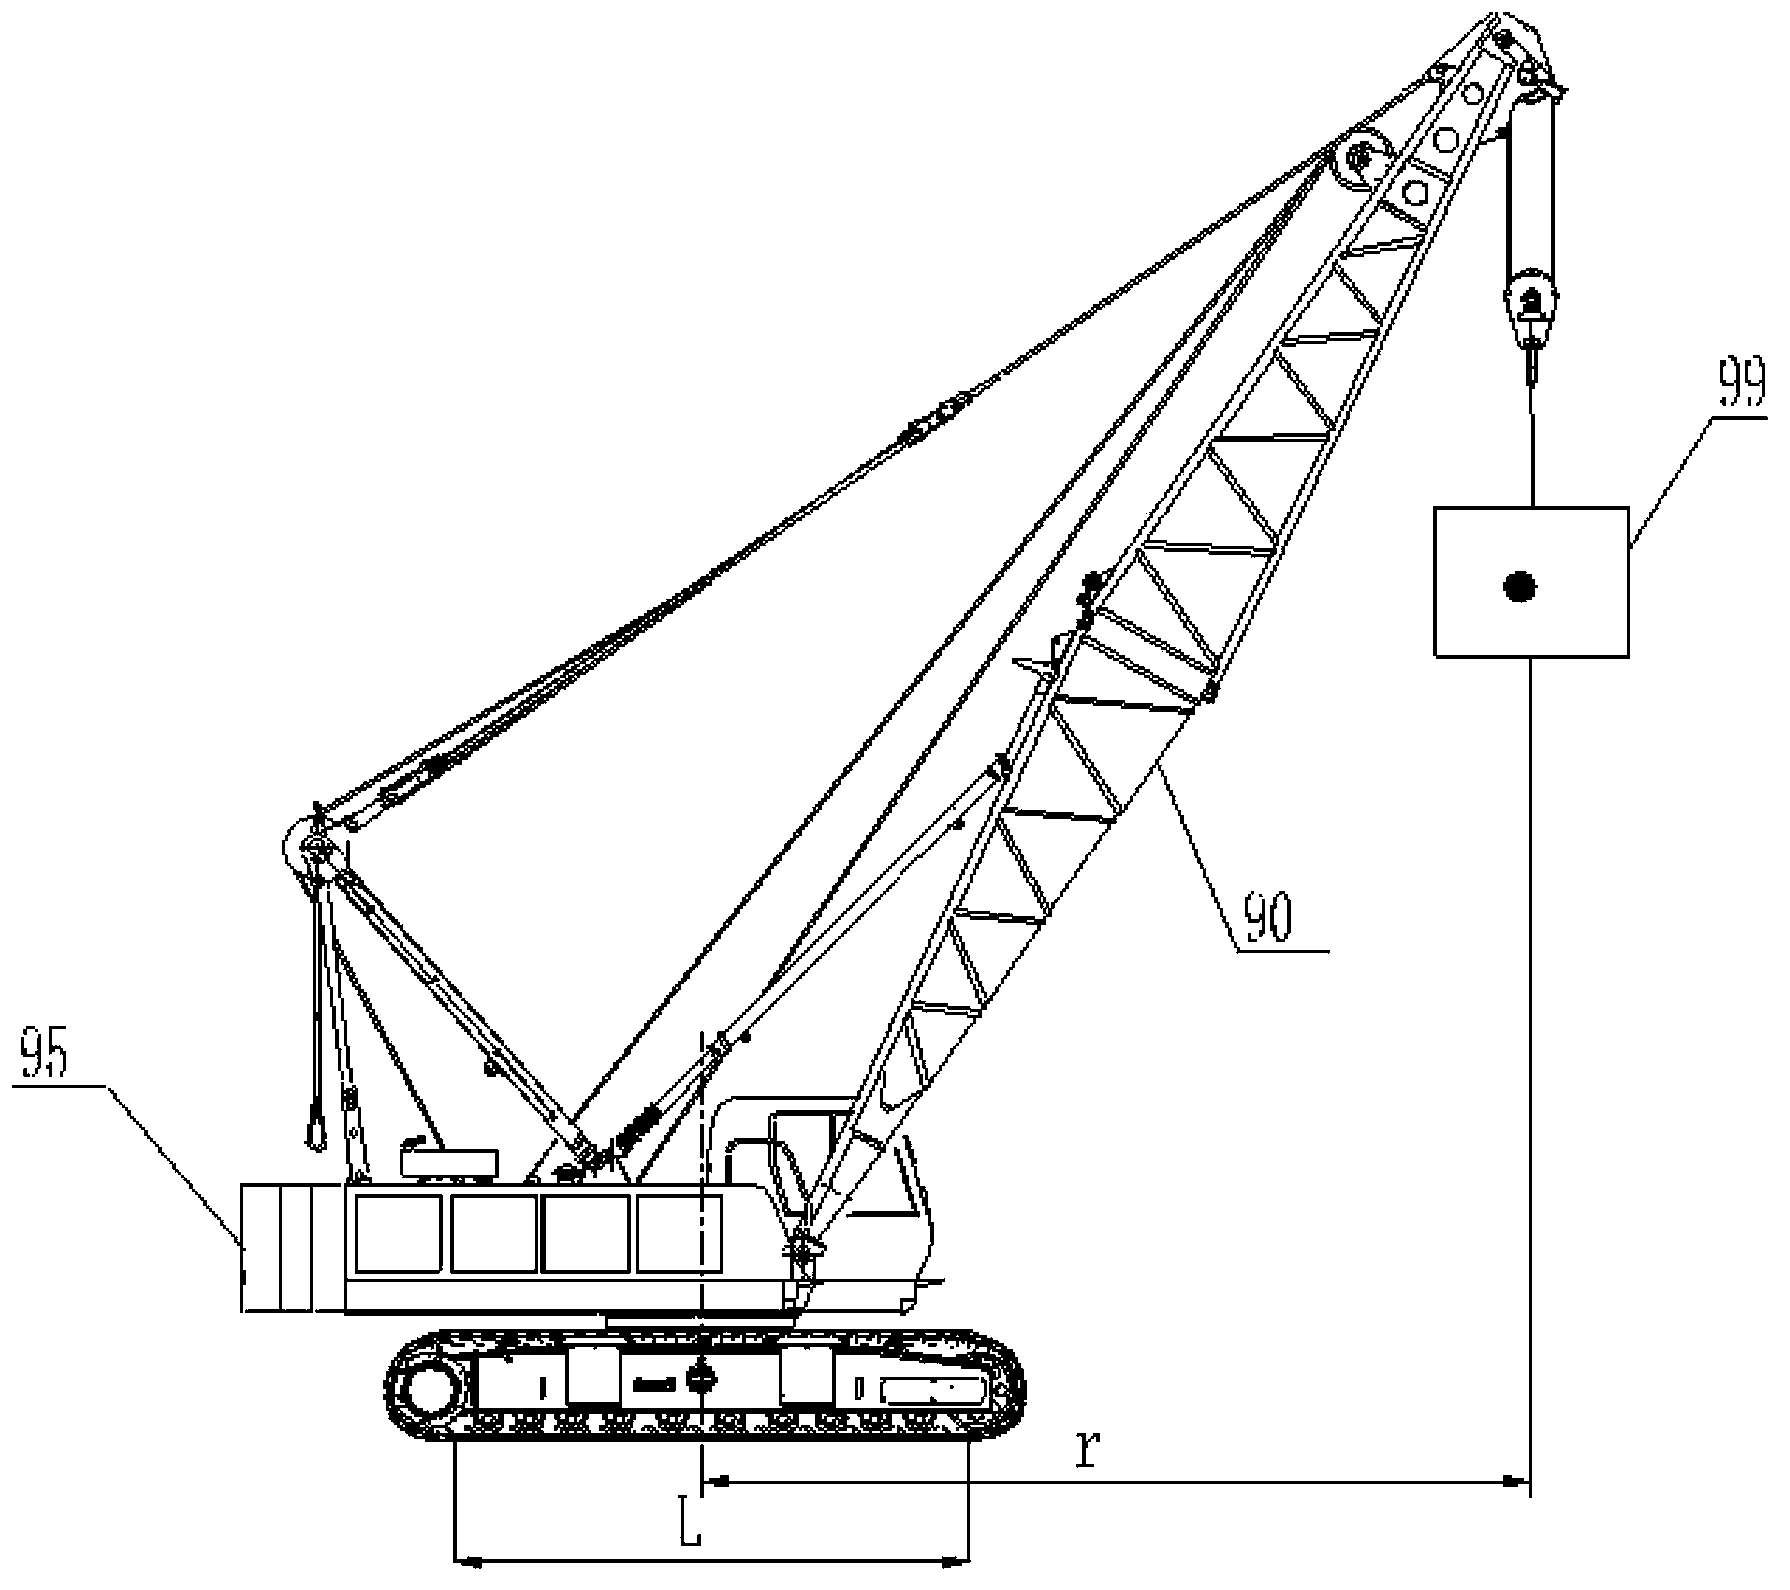 Apparatus for acquiring specific ground pressure of crawler belt of crane and crane